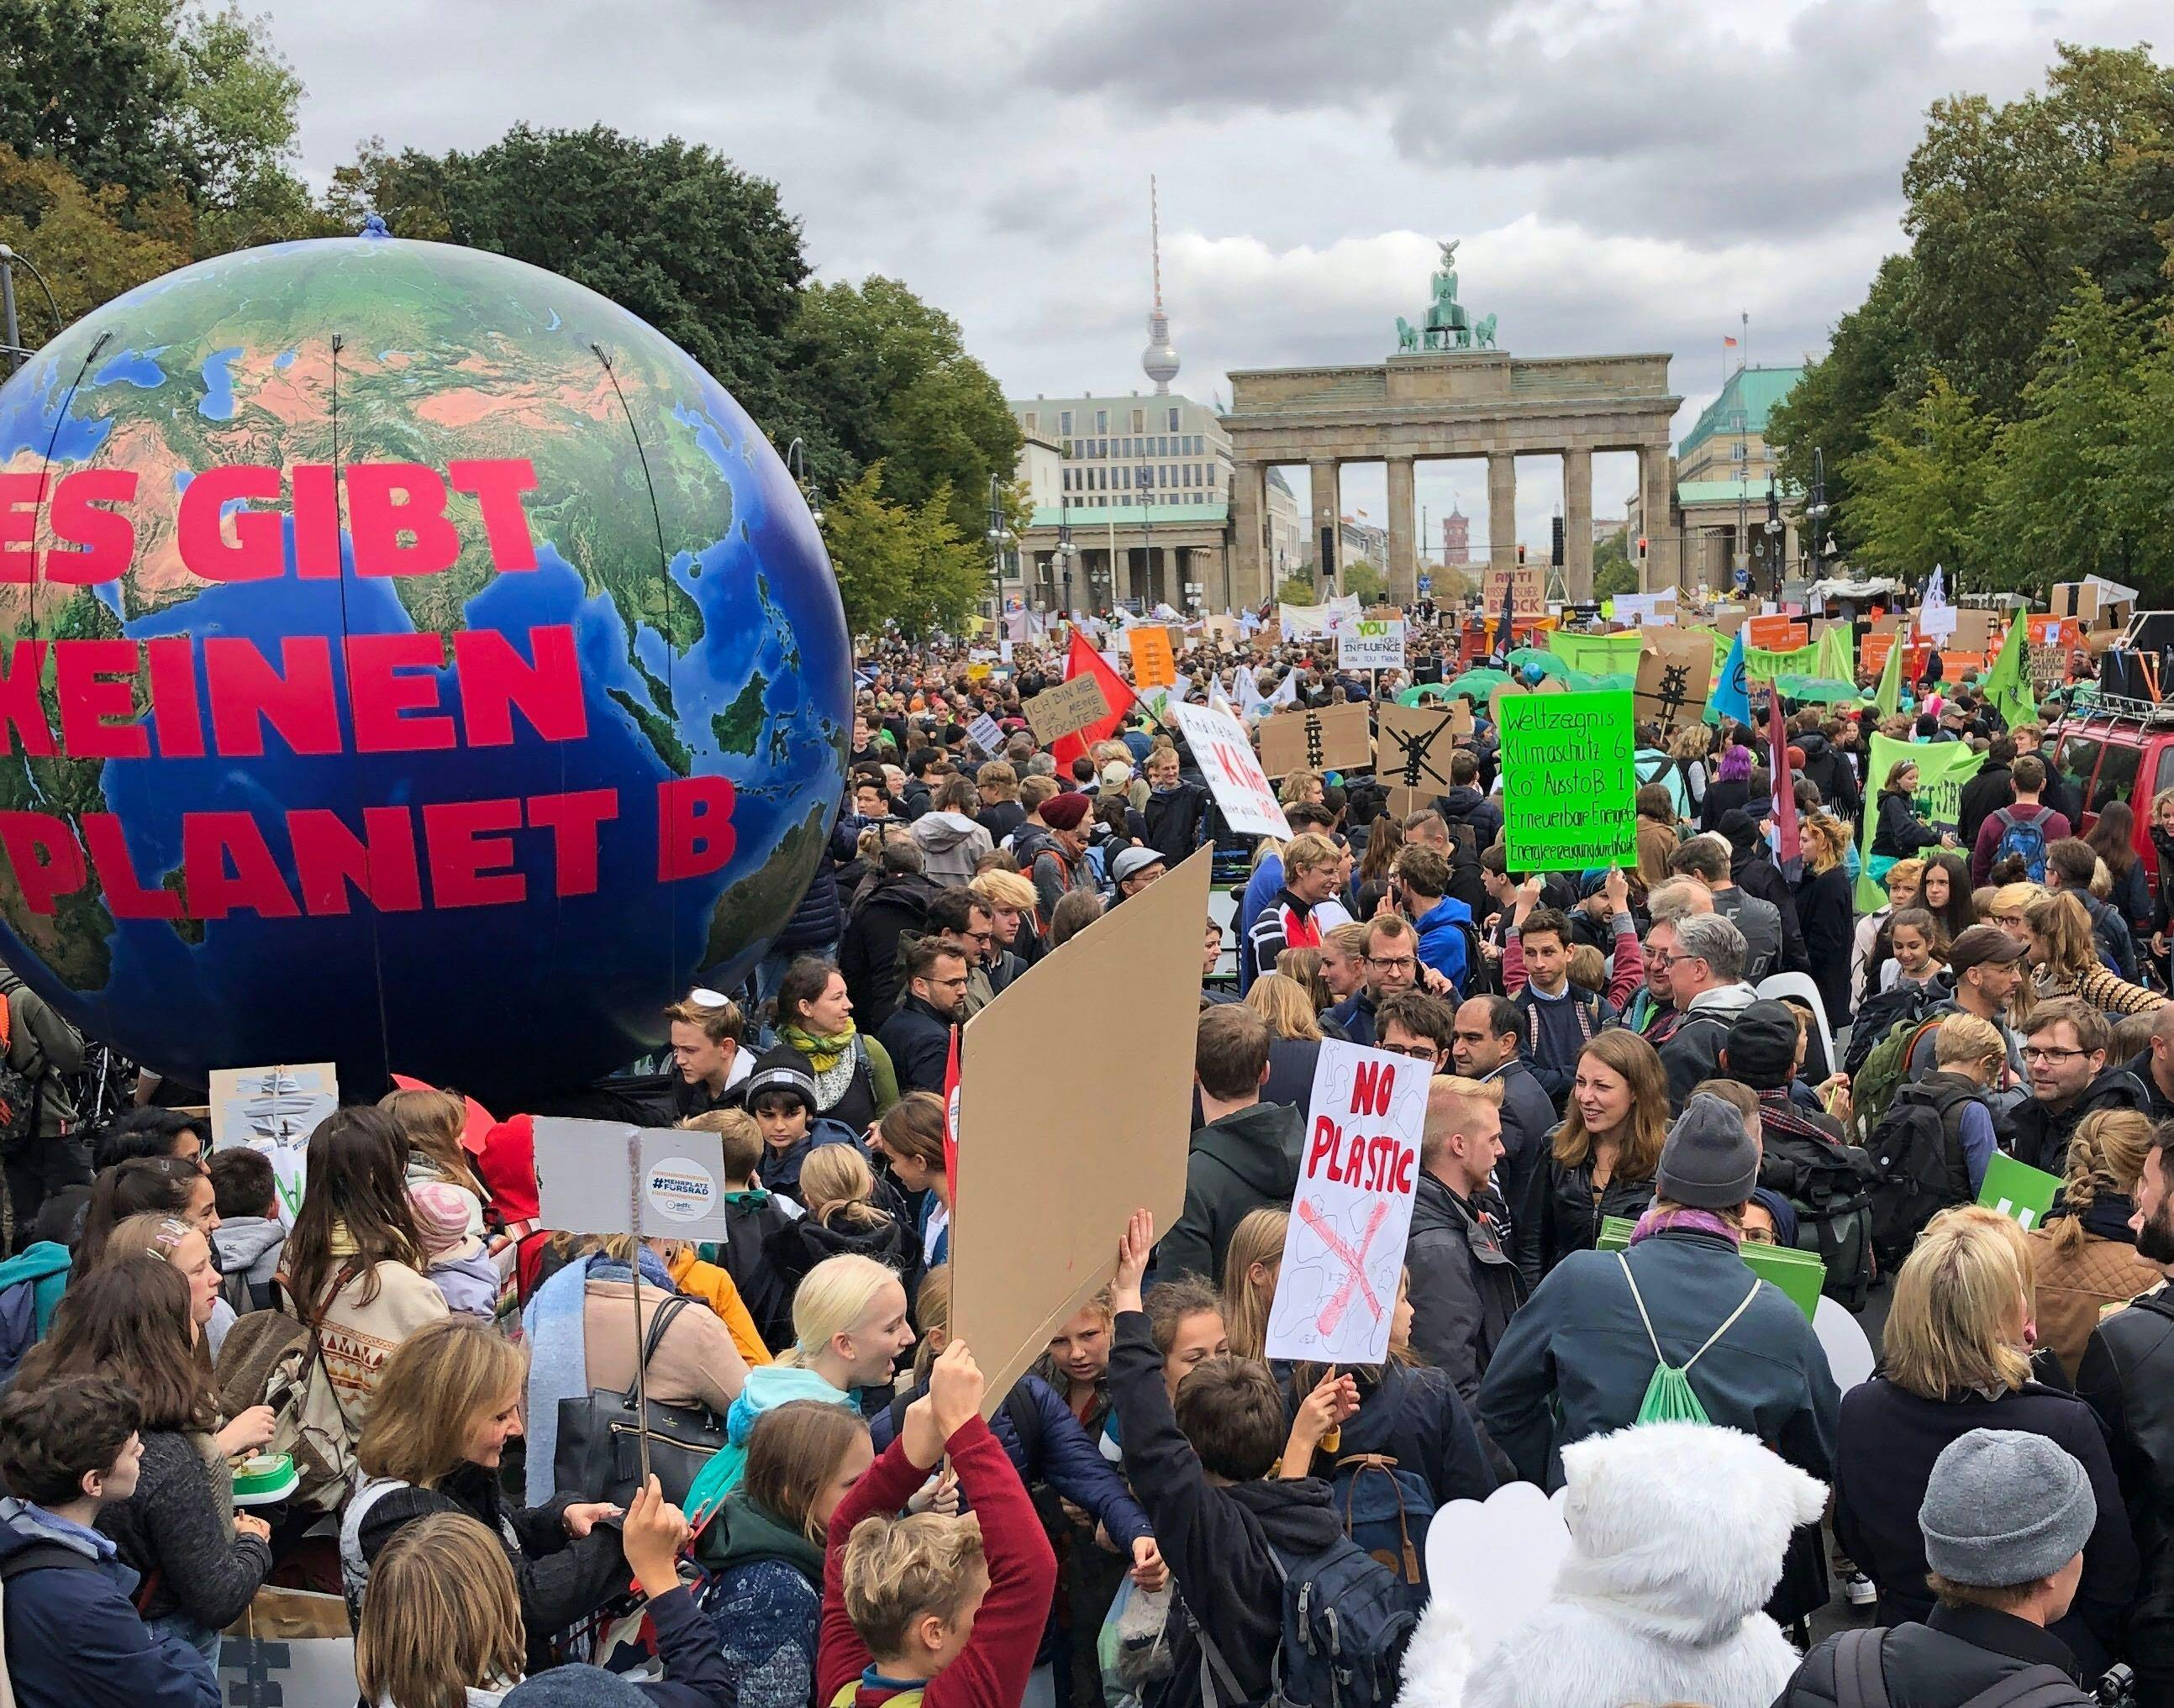 Eine große Menschenmenge demonstriert mit Schildern vor dem Brandenburger Tor. Es ist eine große Erdkugel zu sehen mit der Aufschrift: "Es gibt keinen Planet B"